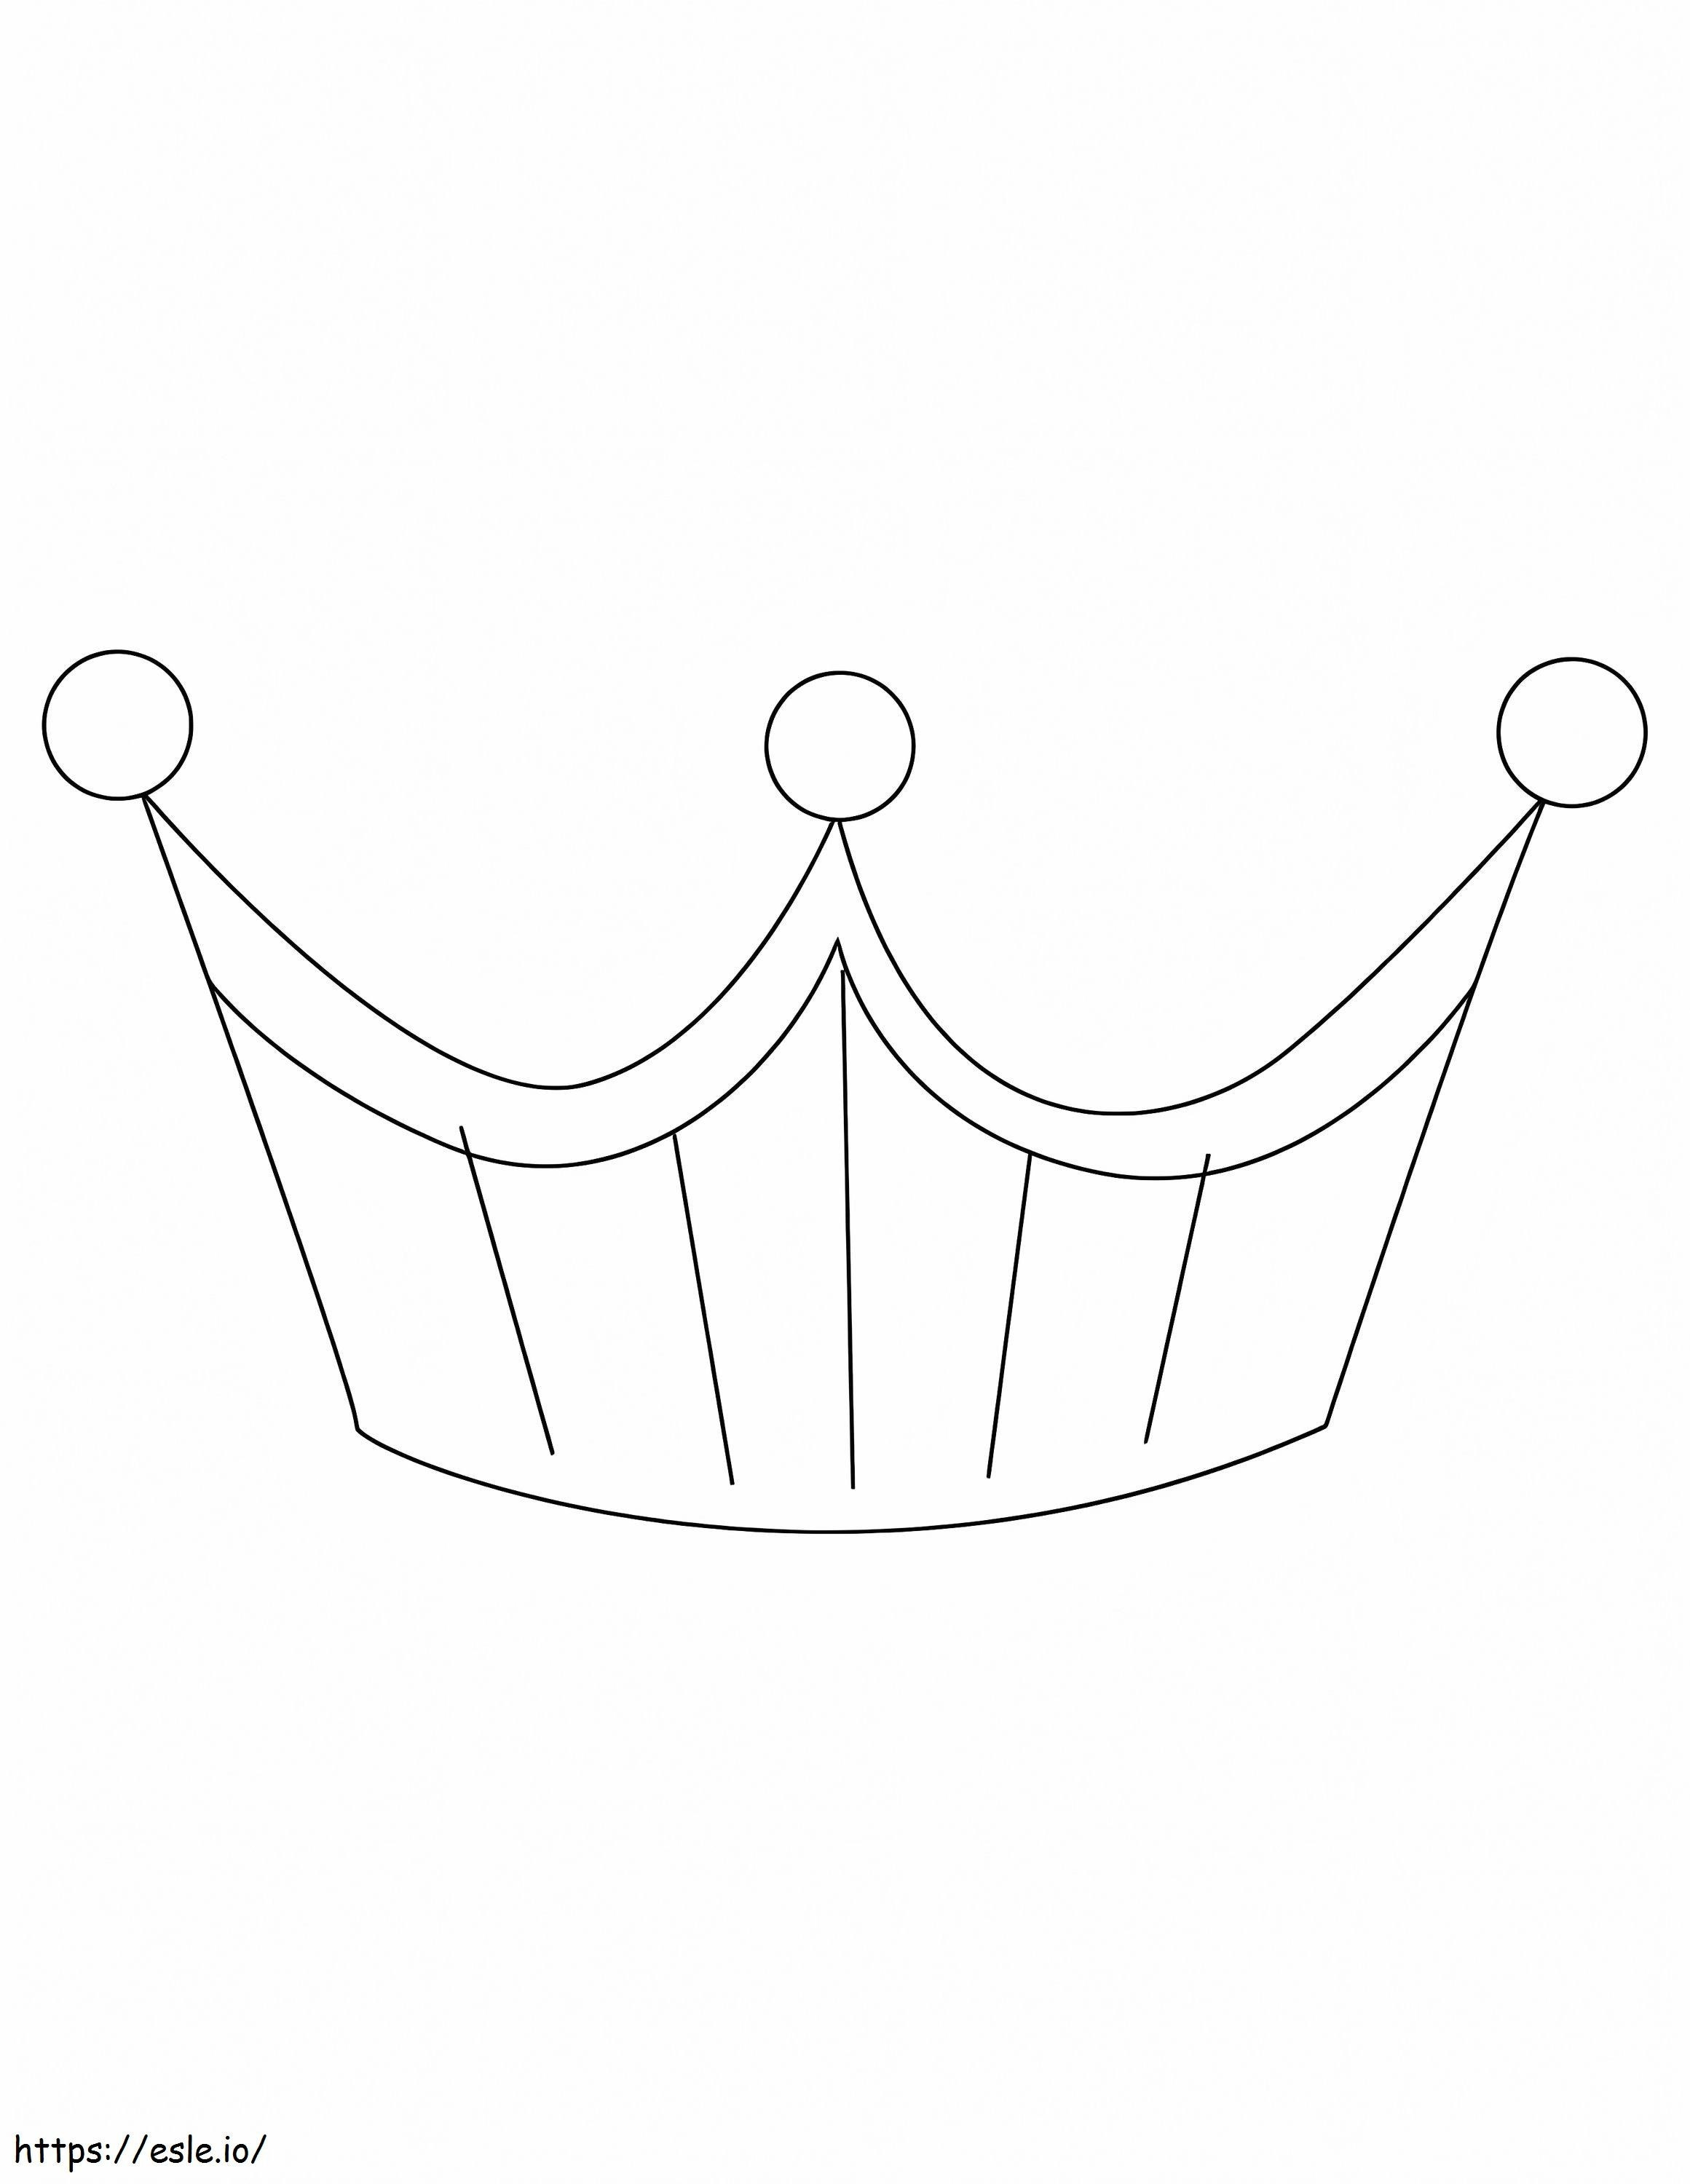 Coroana simplă 1 de colorat